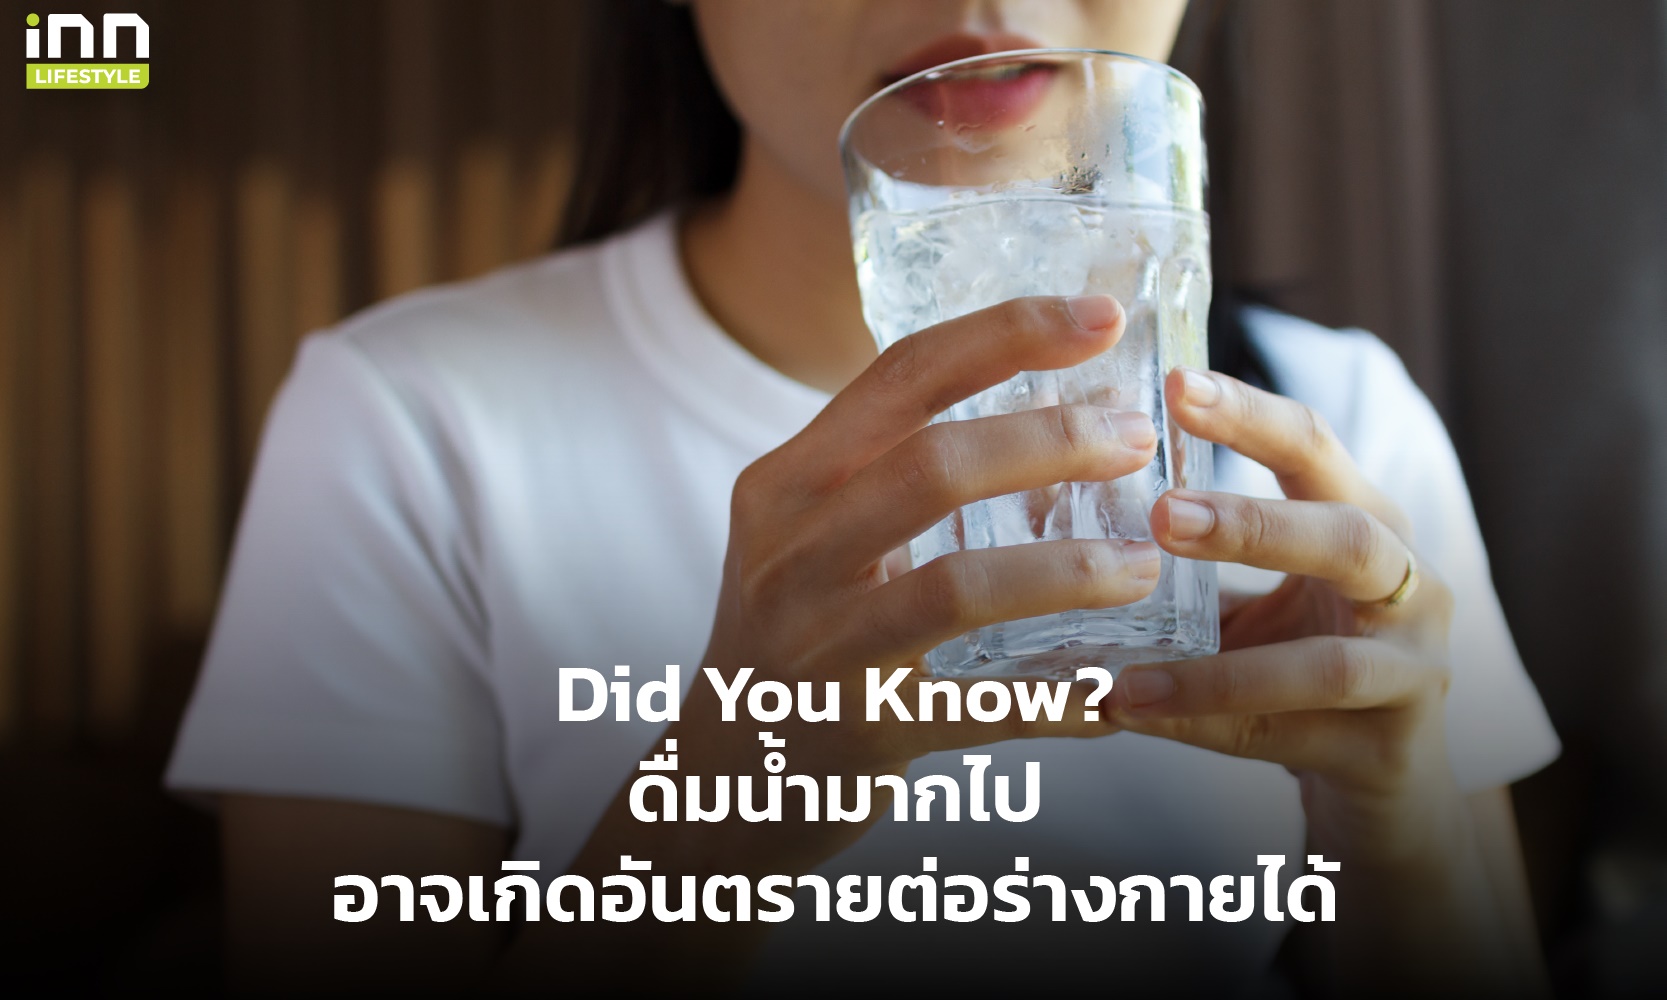 ดื่มน้ำมากไปอาจเกิดอันตรายต่อร่างกายได้